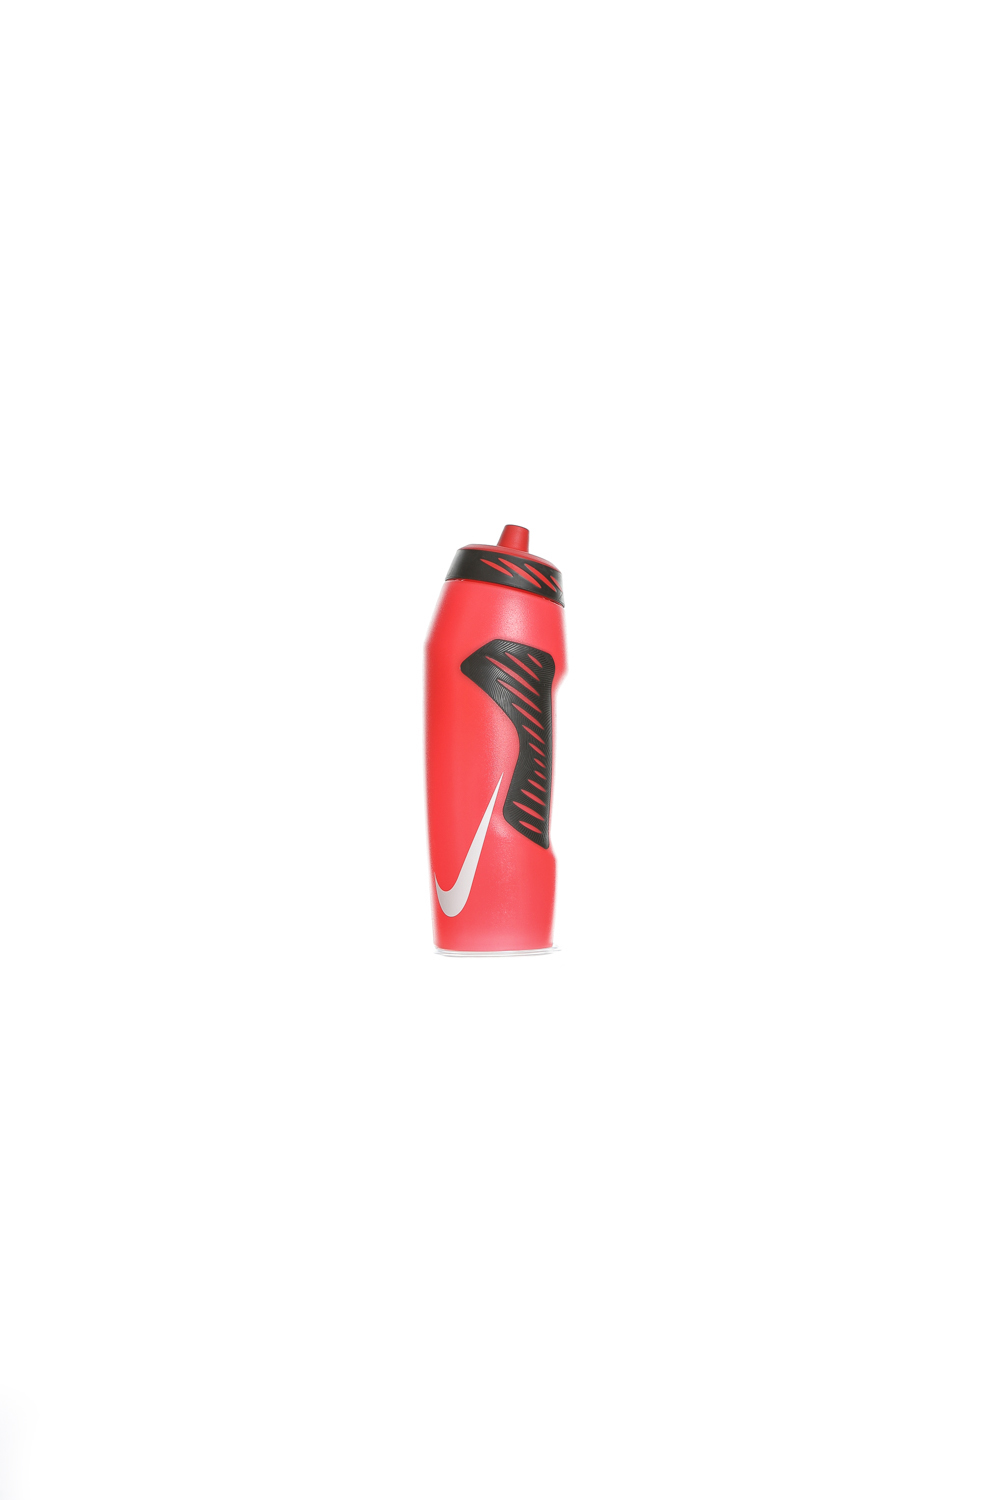 Γυναικεία/Αξεσουάρ/Αθλητικά Είδη/Εξοπλισμός NIKE - Παγούρι νερού NIKE N.OB.A6.32 HYPERFUEL κόκκινο (946 ml)